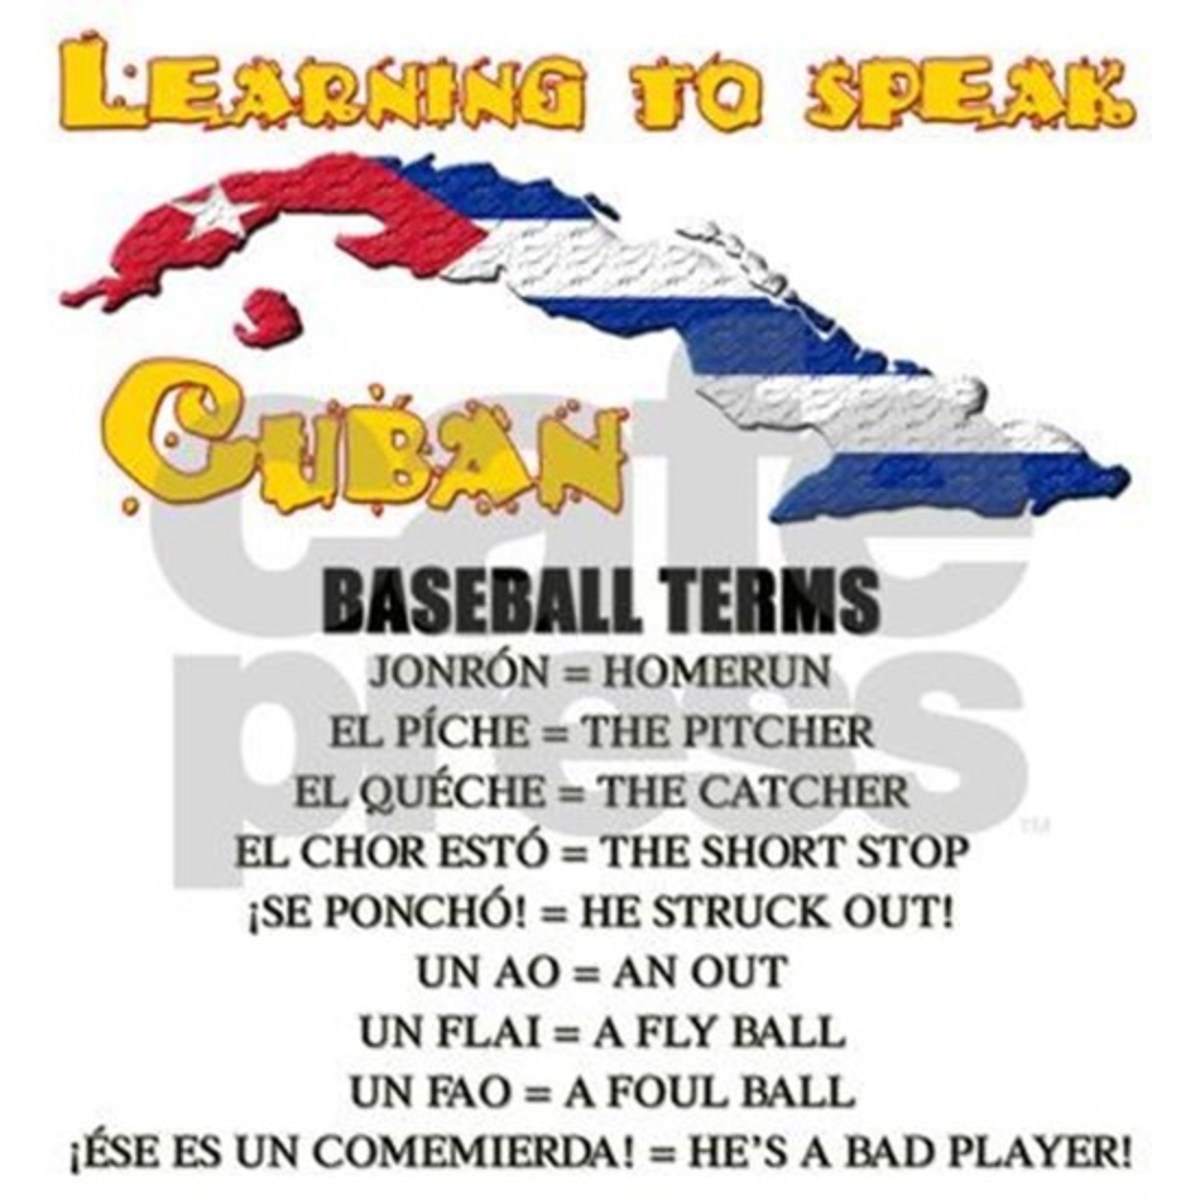 cuban terms